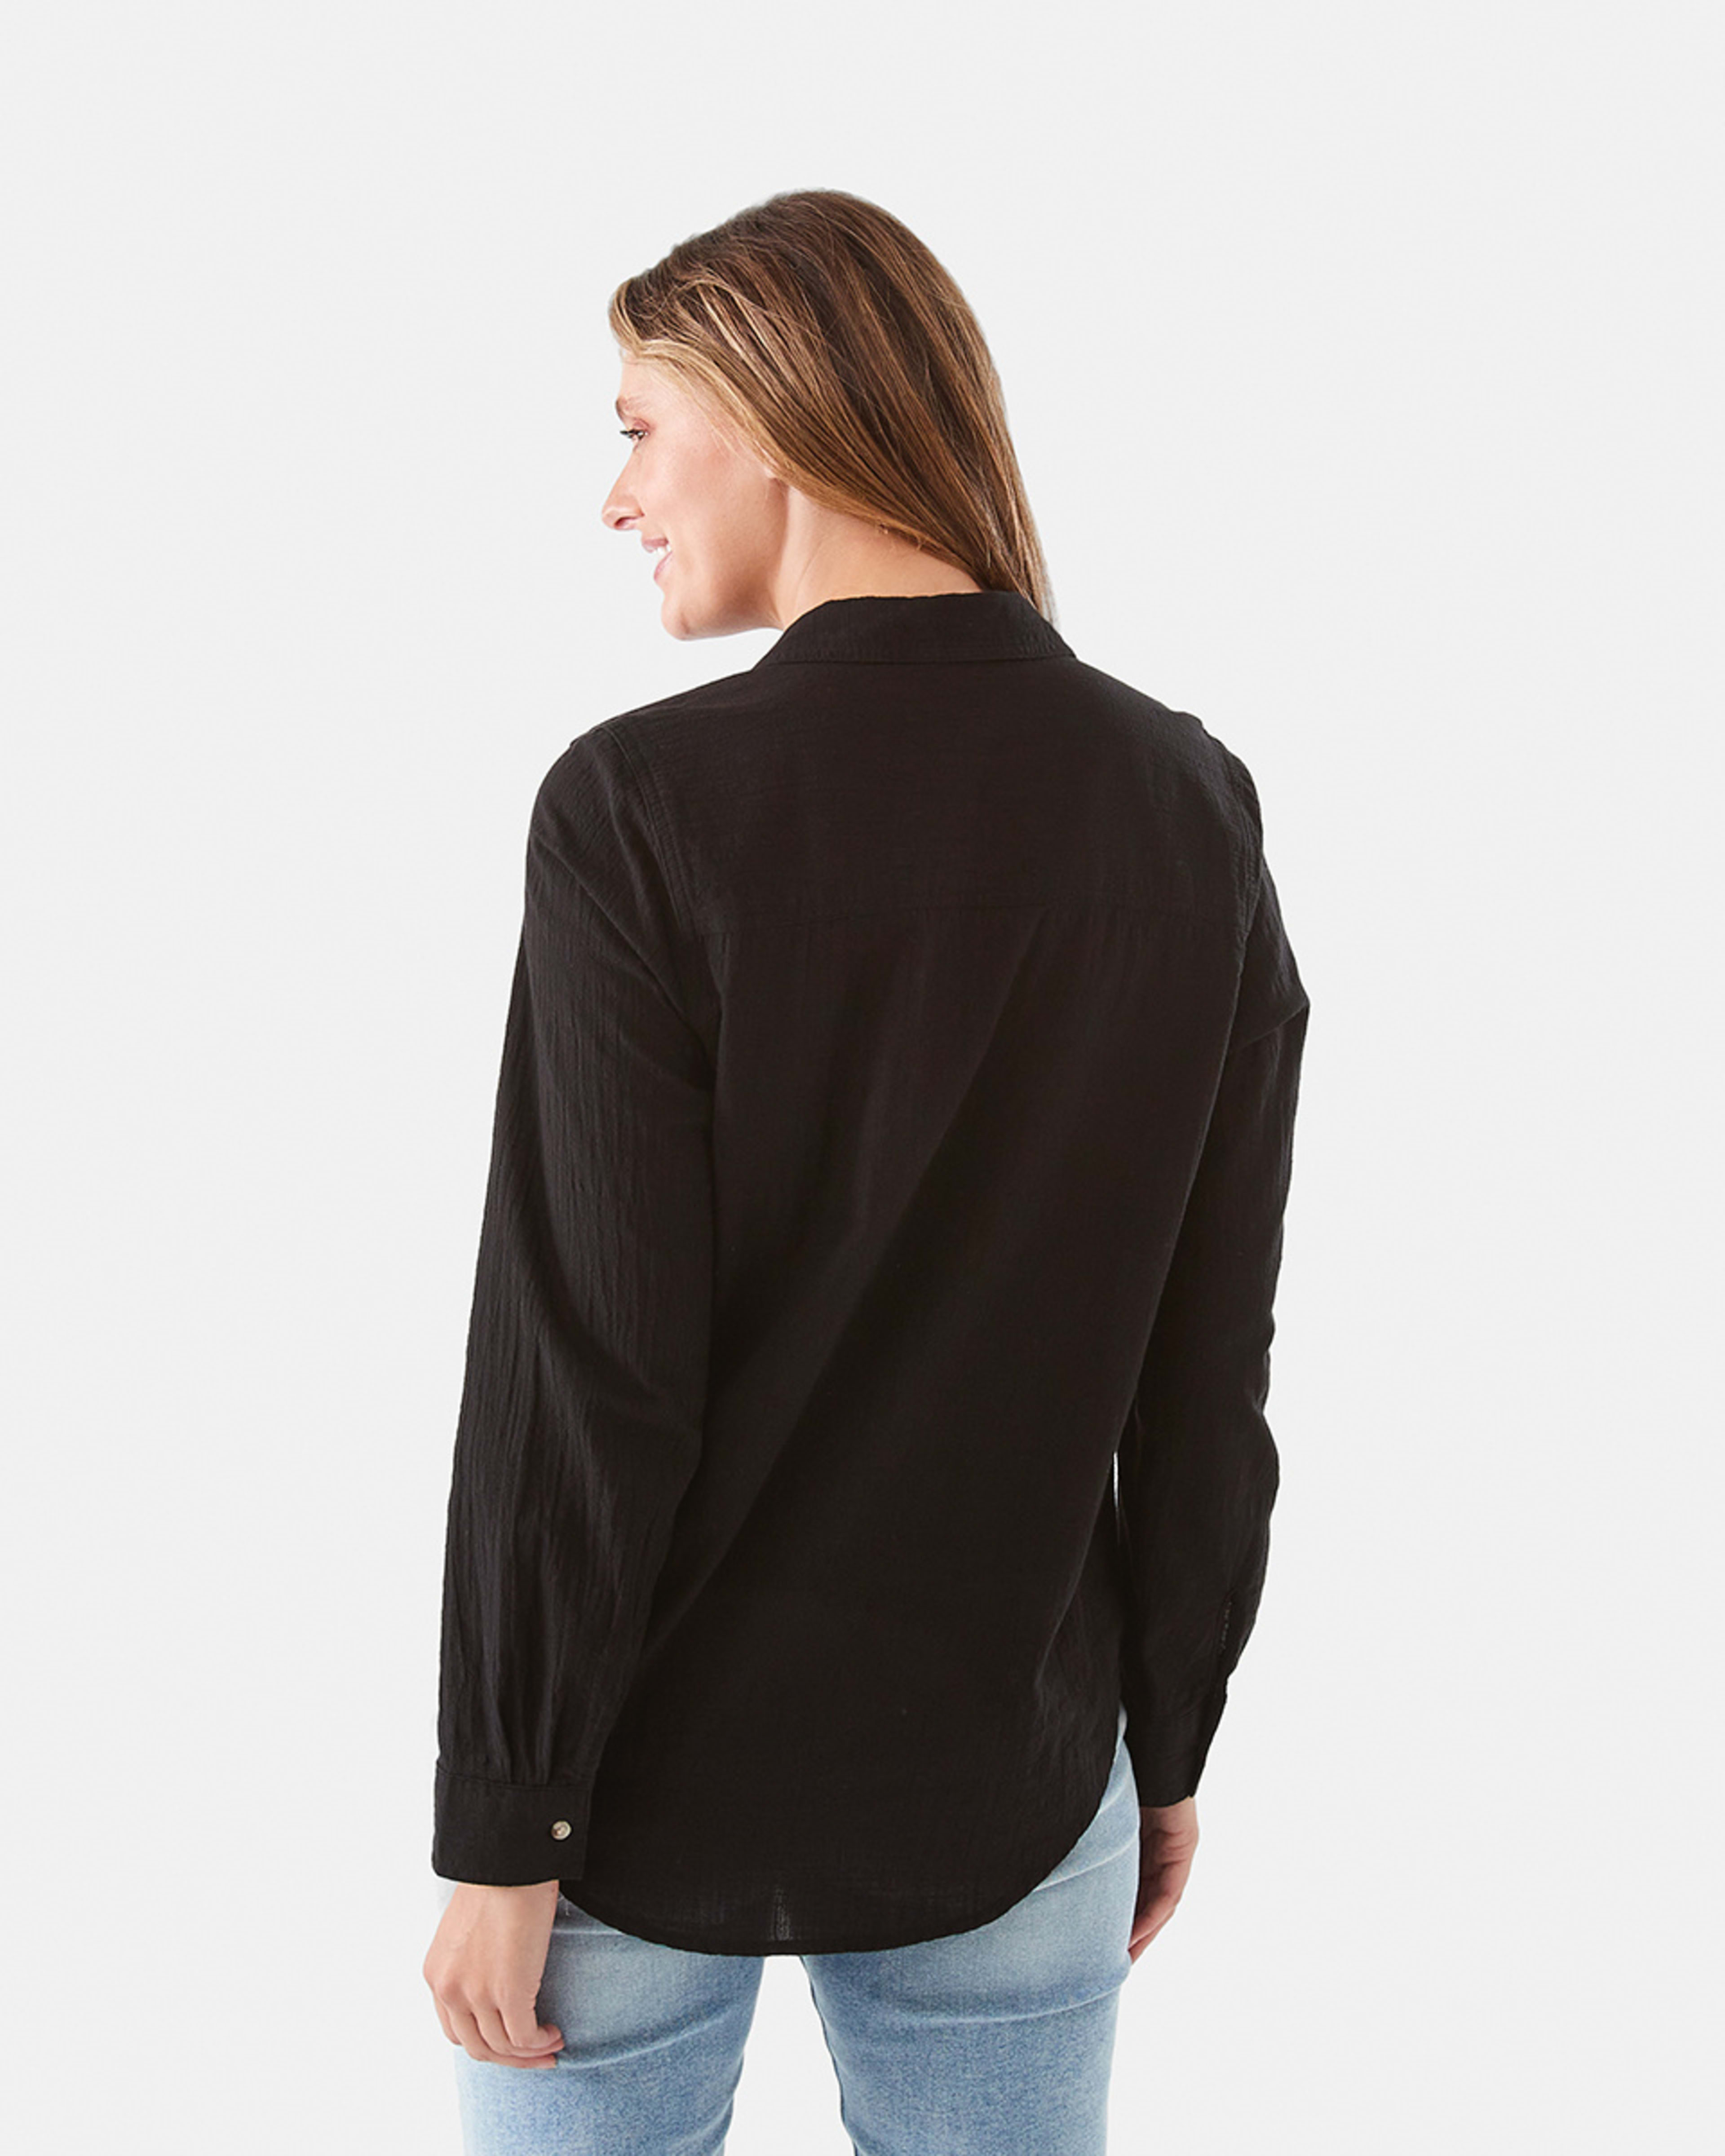 Long Sleeve Casual Shirt - Kmart NZ